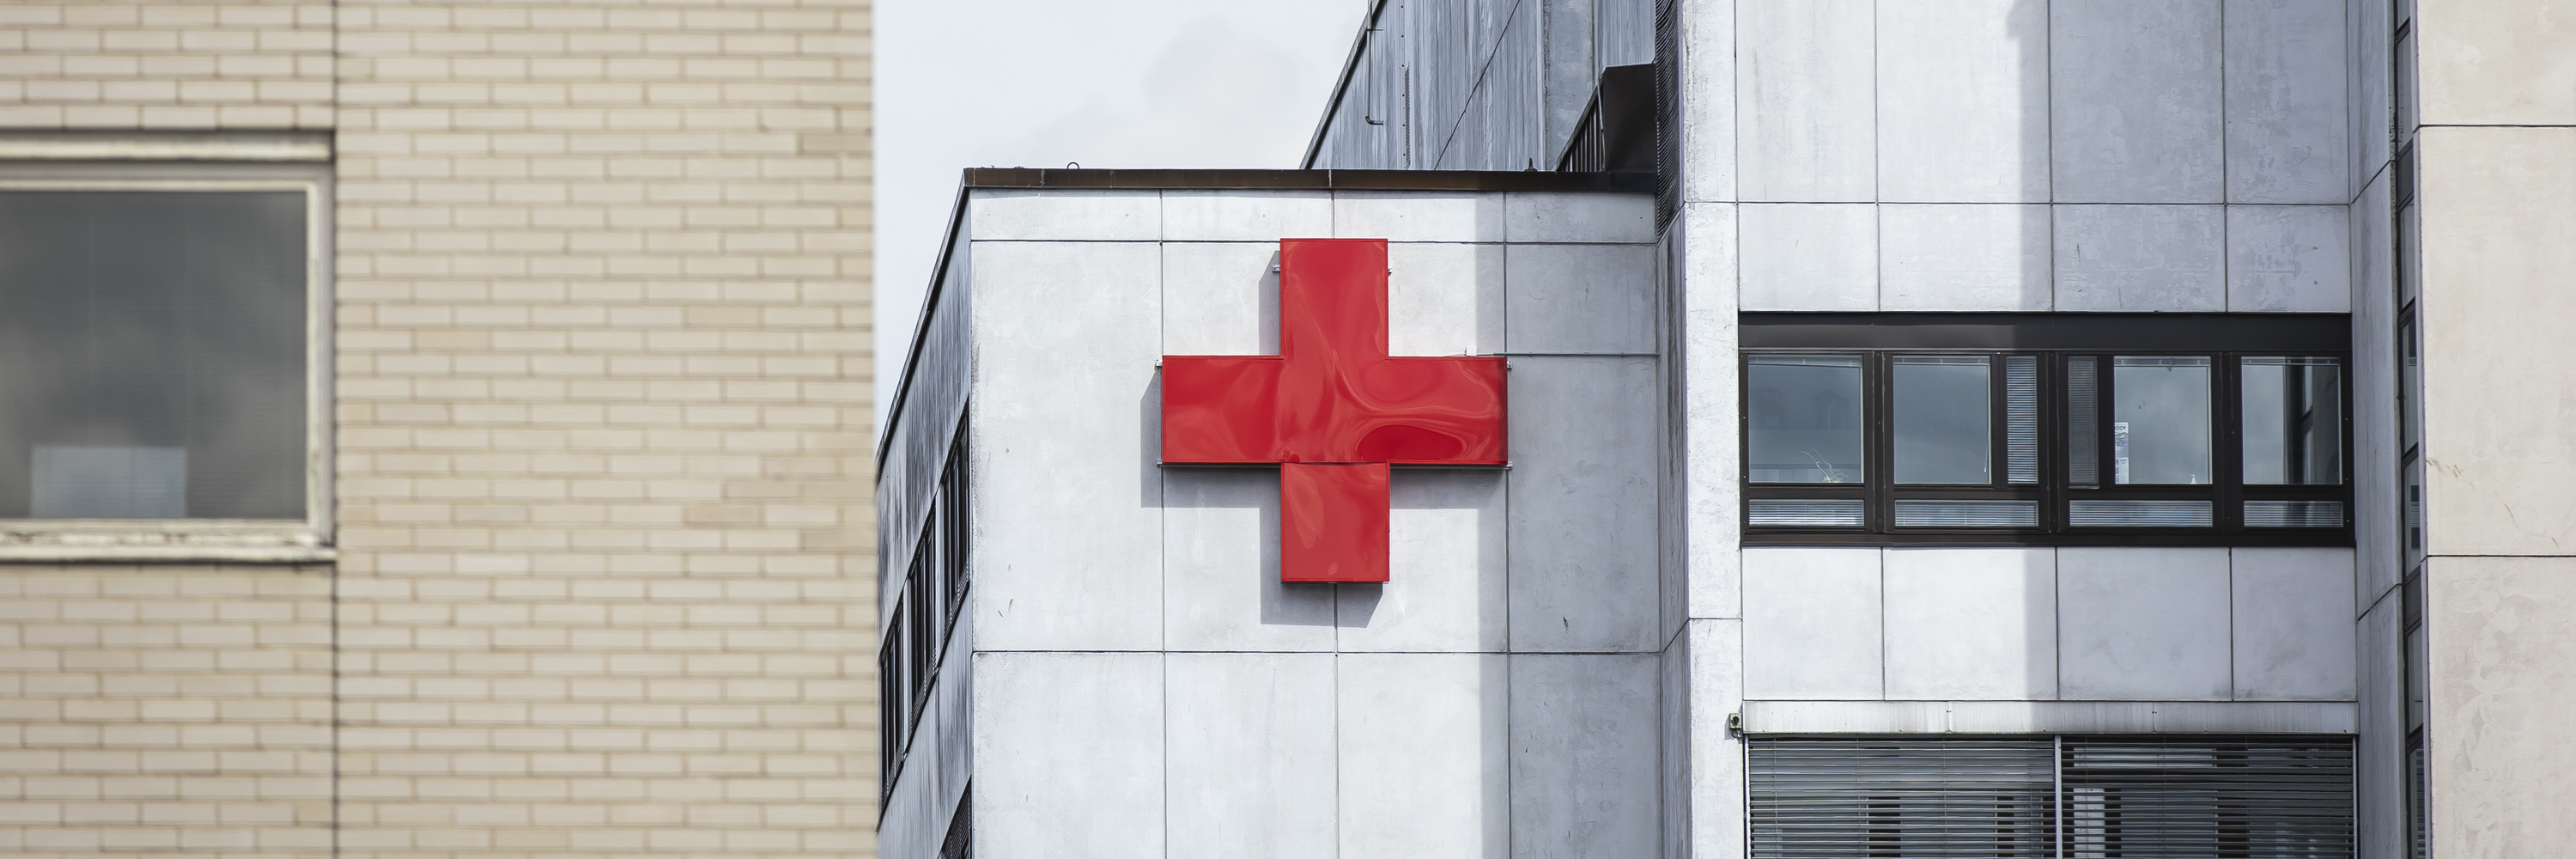 Sairaalarakennus, jonka seinässä on punainen risti.